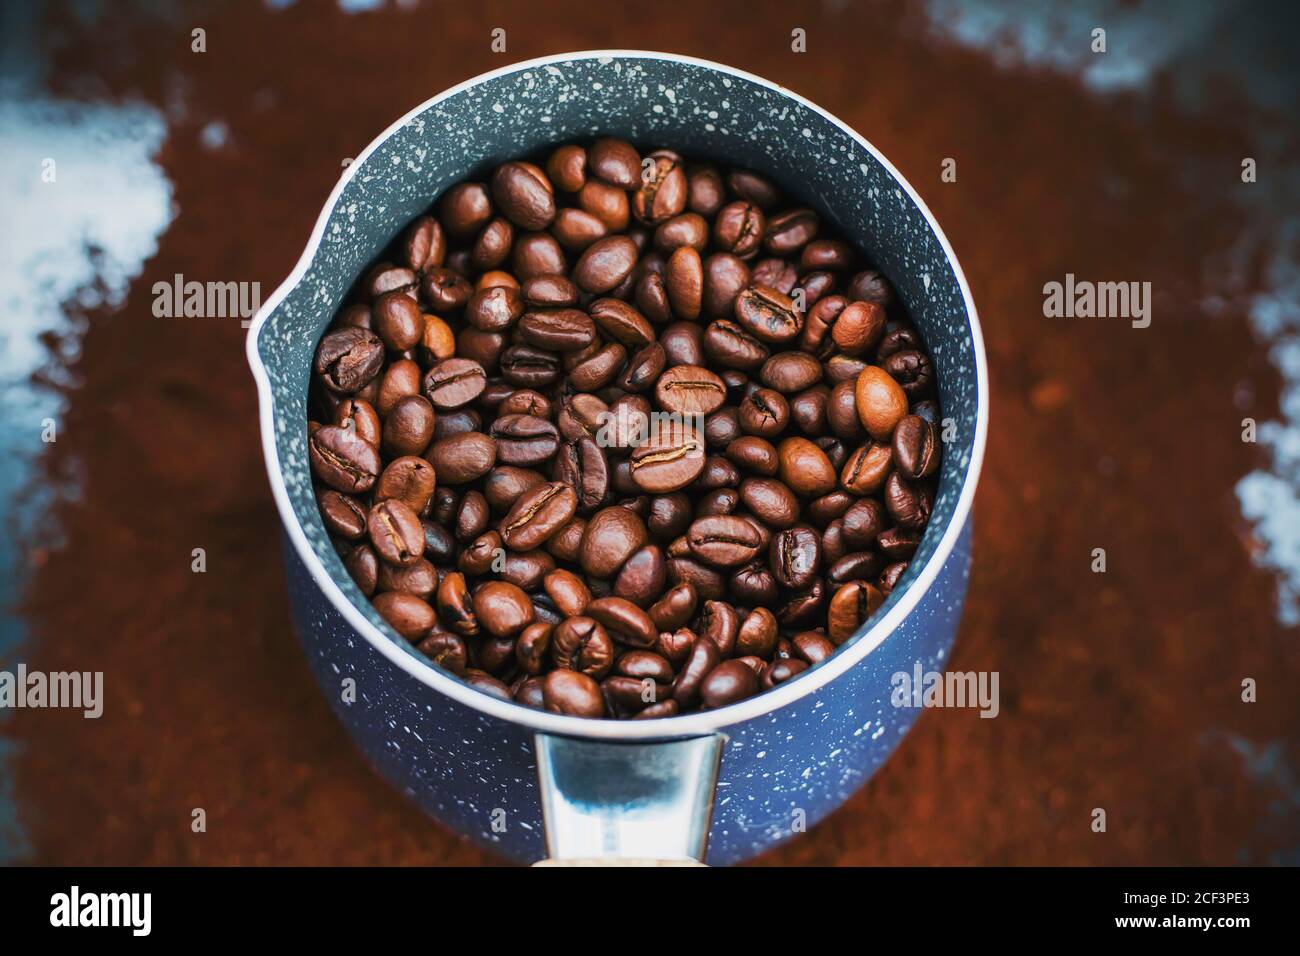 Sur le café moulu est une belle cezve bleue, qui est rempli de grains de café torréfiés, qui sera ensuite fait café fort. Banque D'Images